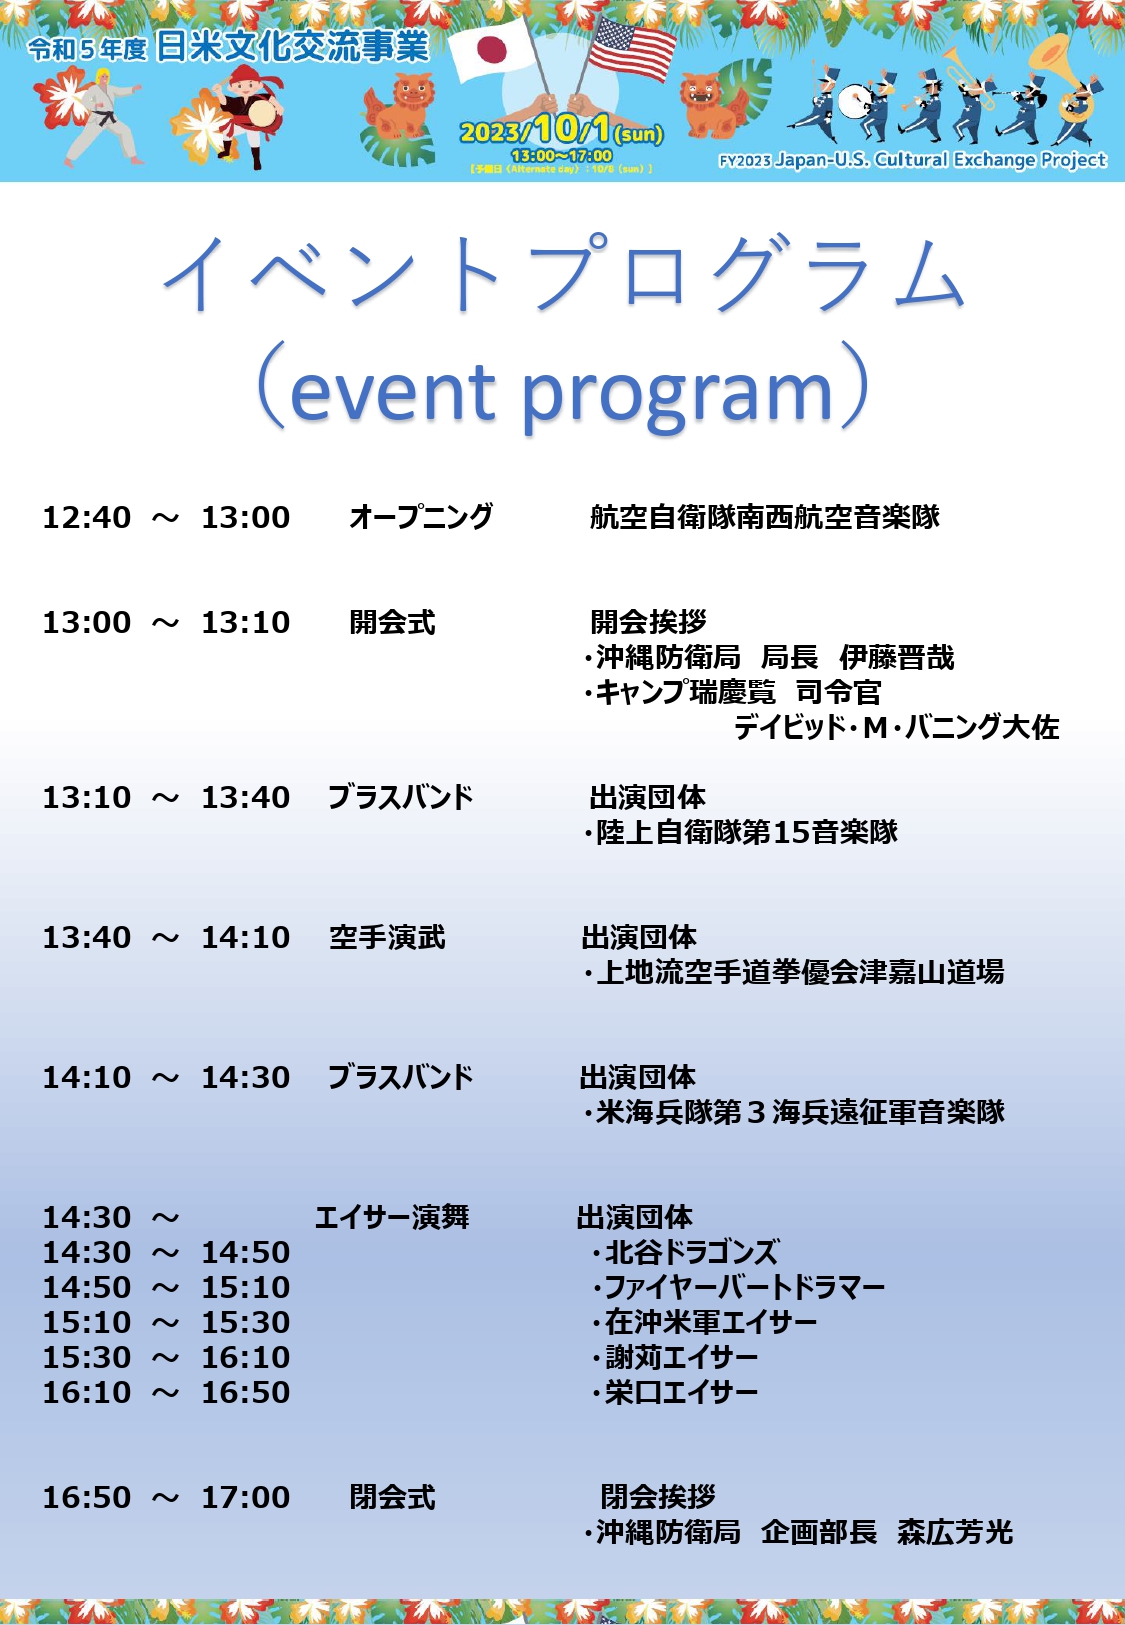 令和5年度日米文化交流事業（日米音楽交流）のイベント・プログラム